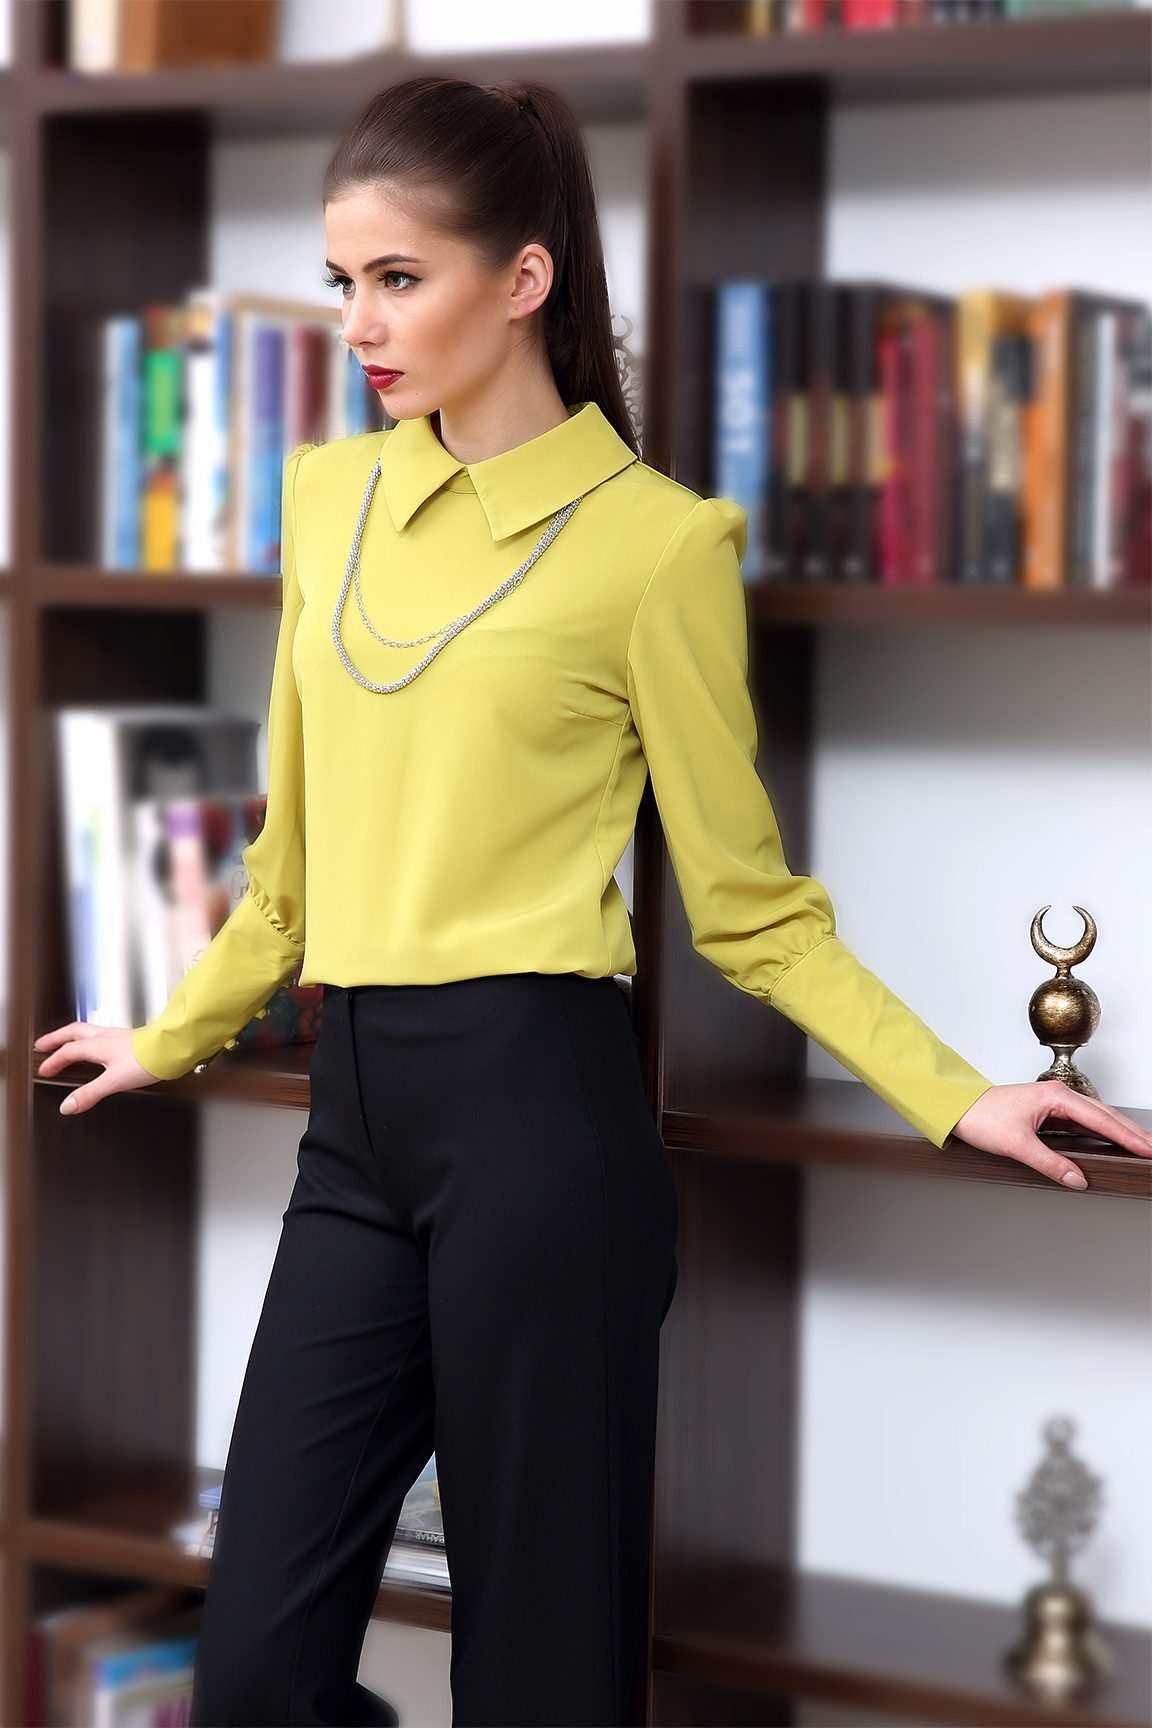 Kolları Düğmeli Yağ Yeşili 2015 Yazlık Bluz Modelleri